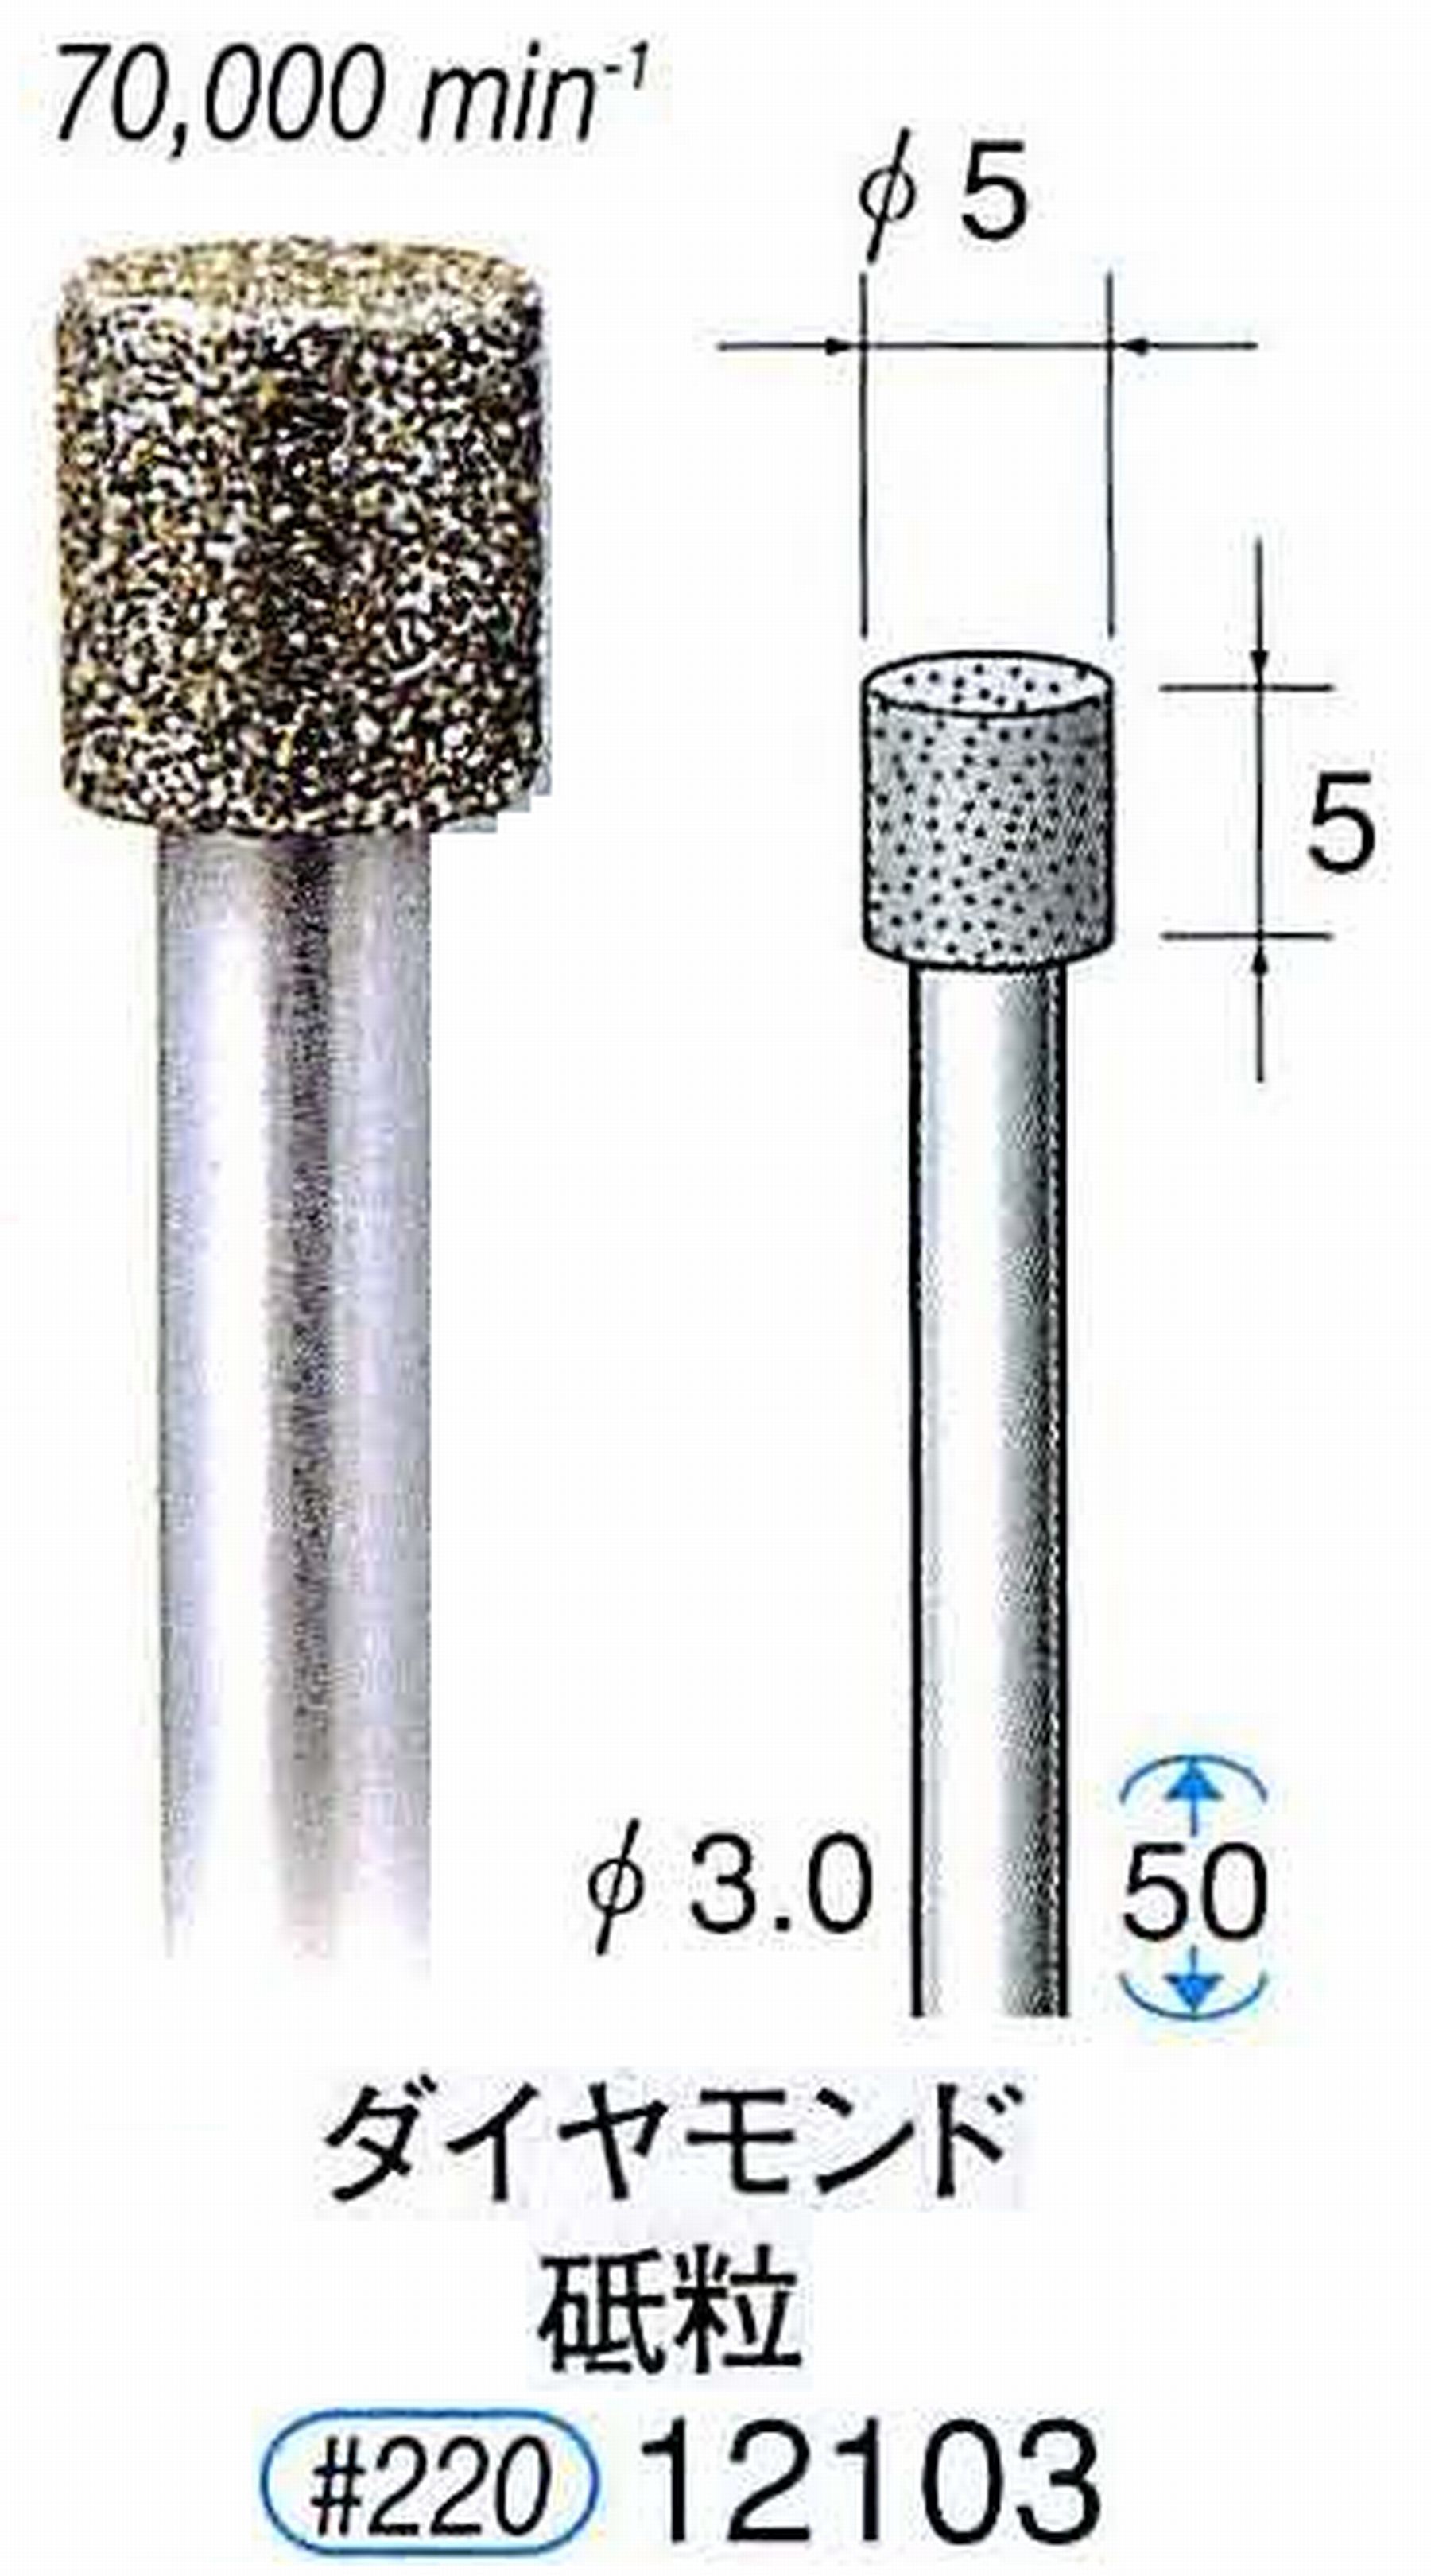 ナカニシ/NAKANISHI 電着ダイヤモンド ダイヤモンド砥粒 軸径(シャンク)φ3.0mm 12103